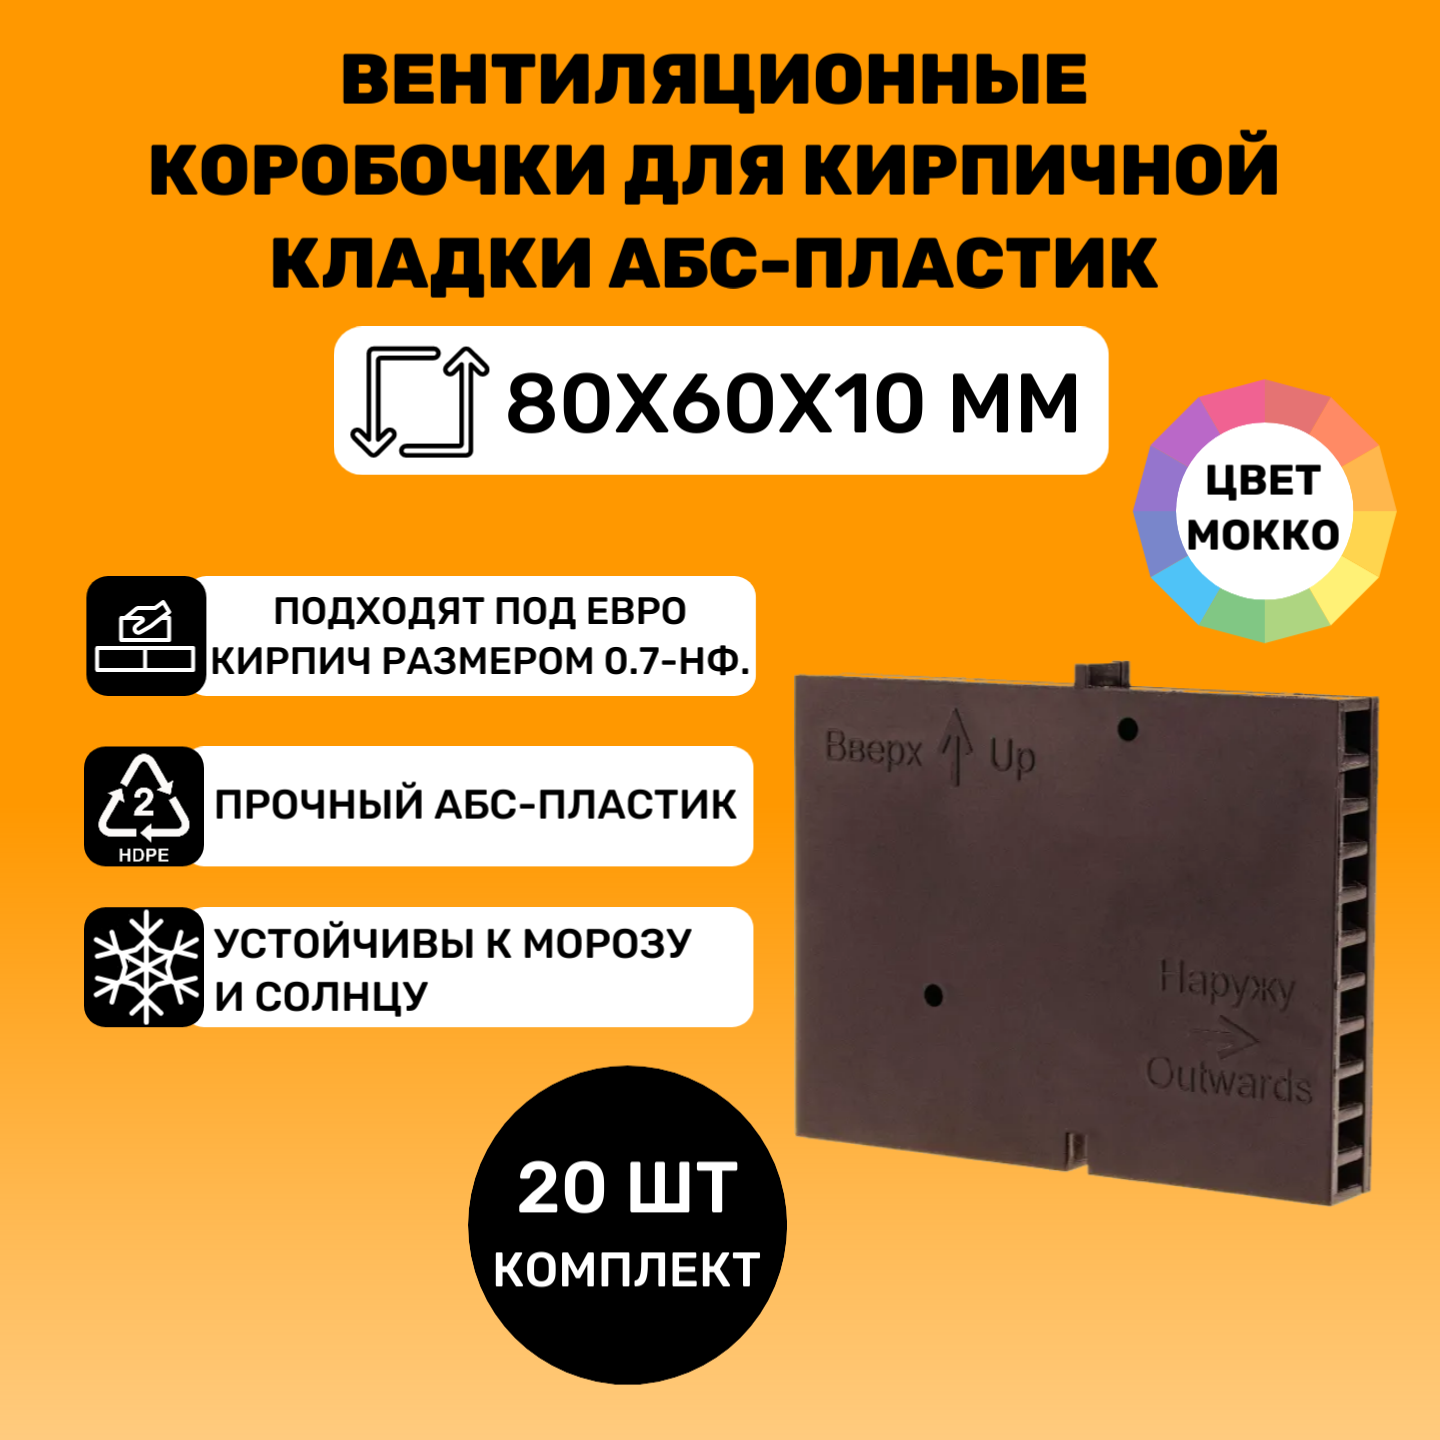 Вентиляционные коробочки для кирпичной кладки 80х60х10 (Мокко АБС пластик) 20 штук